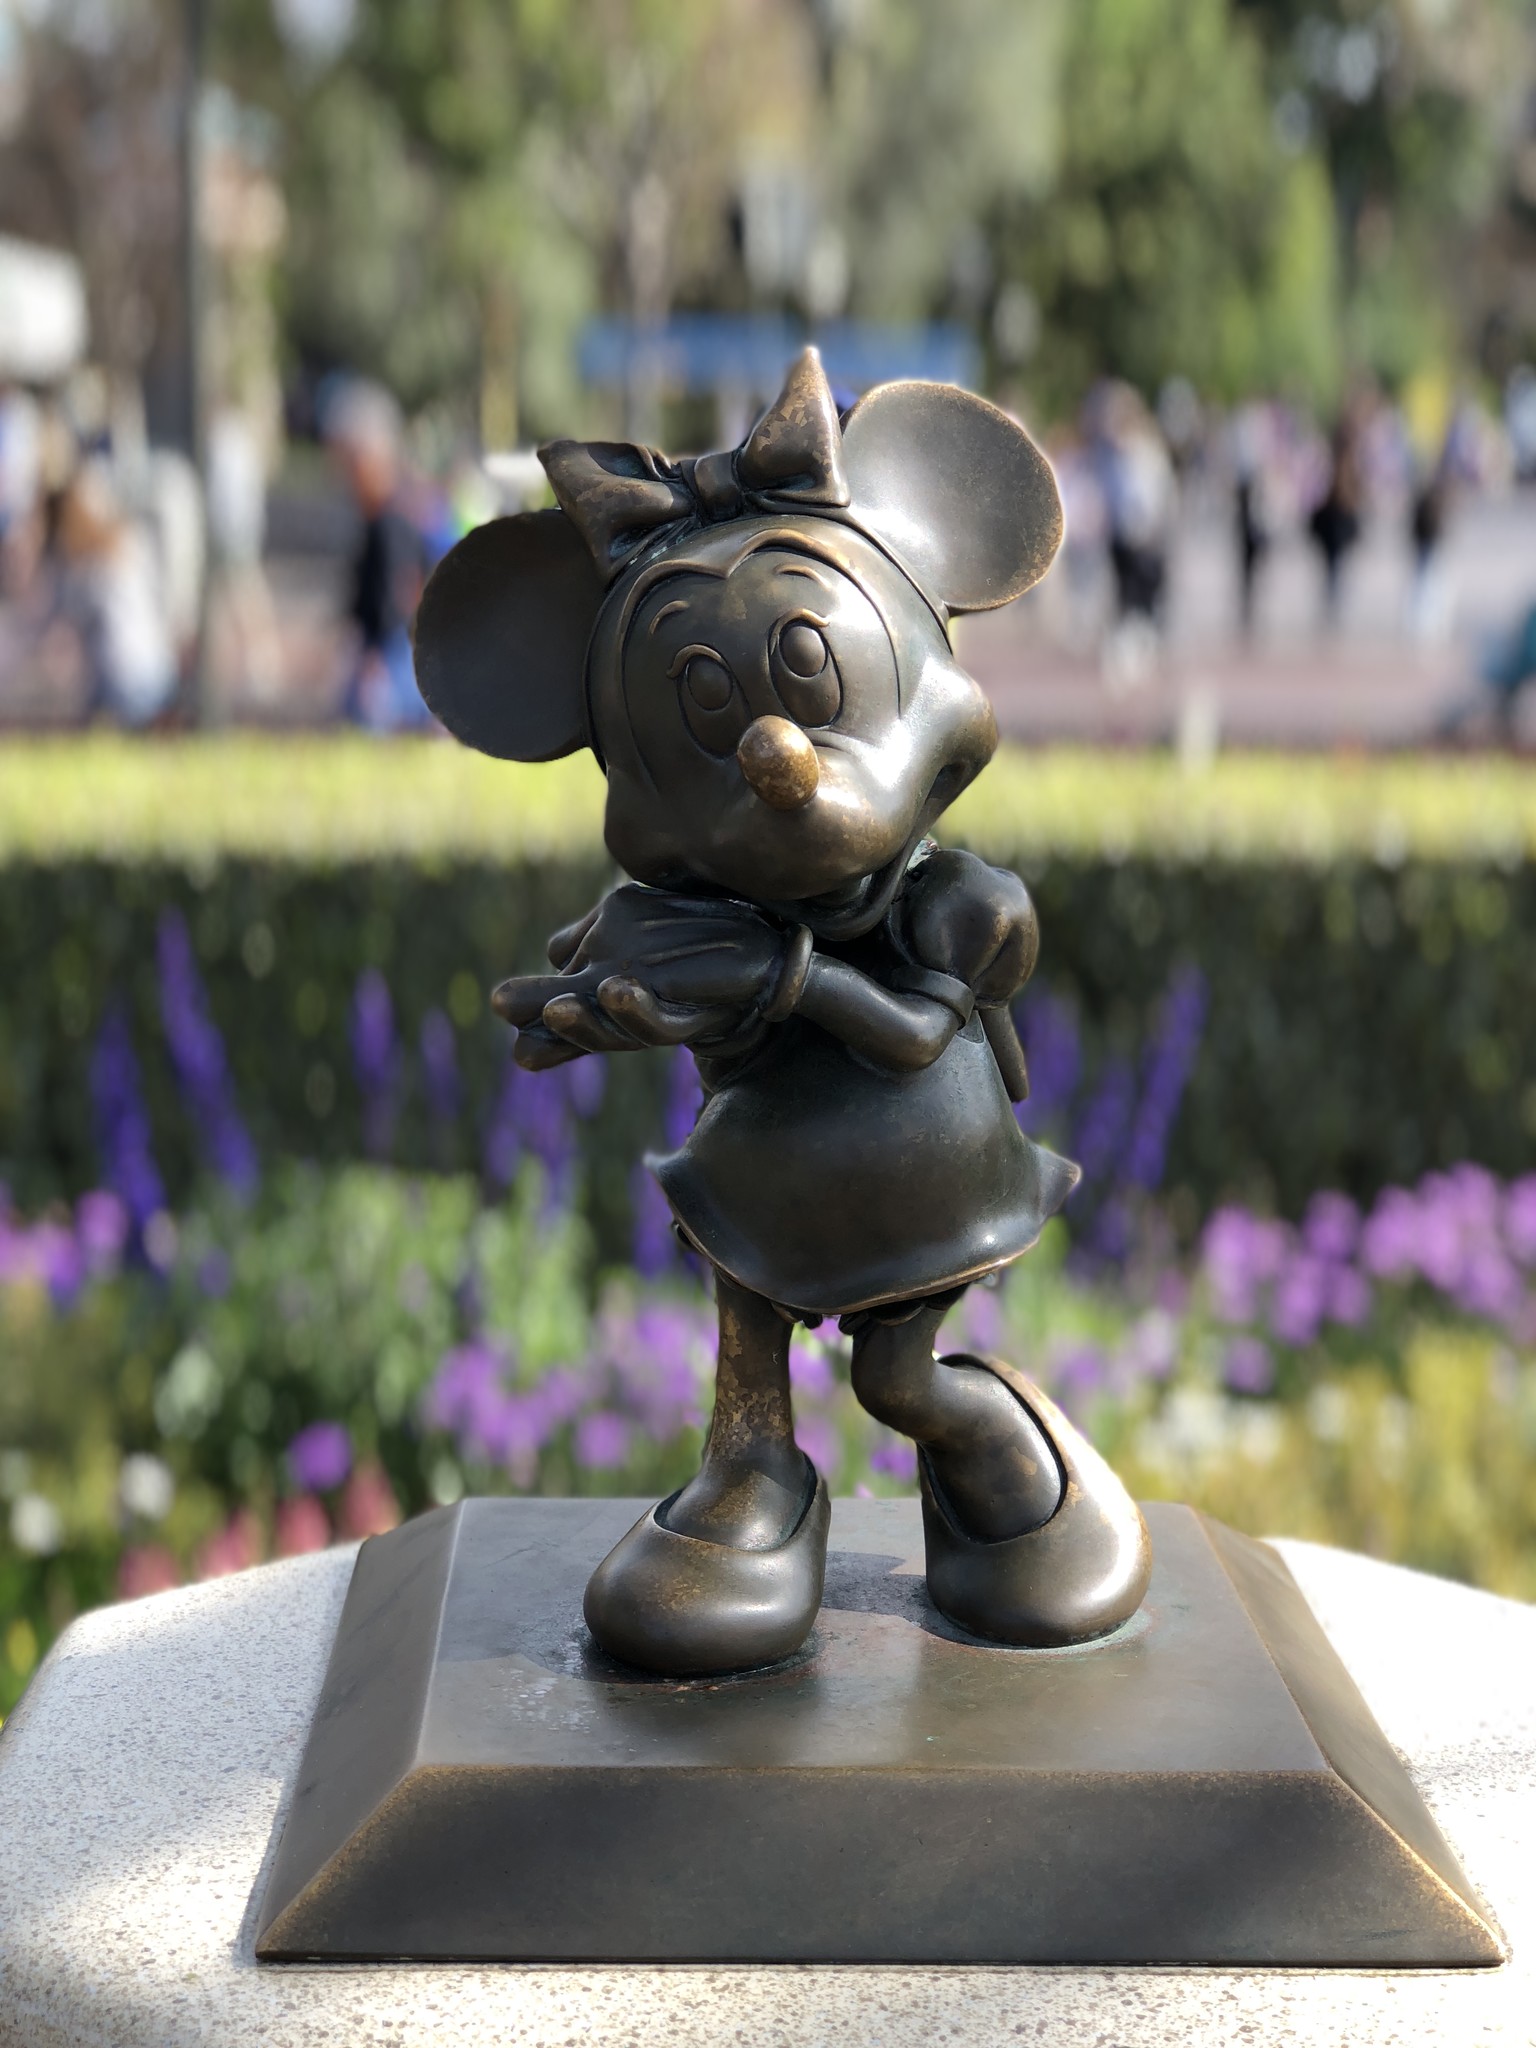 Minnie statue at Disneyland Hub